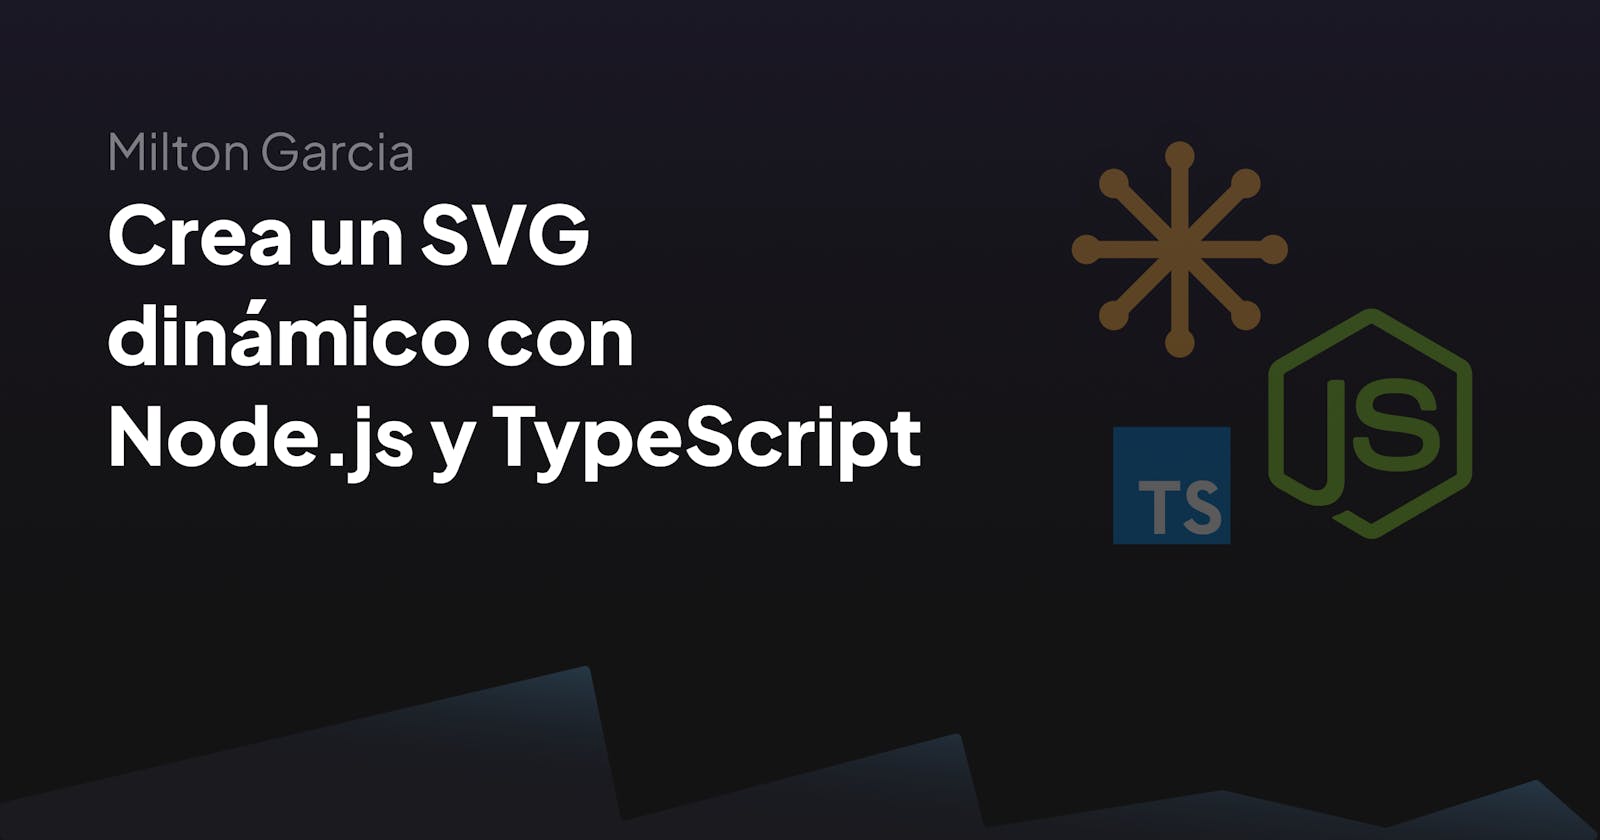 Crea un SVG dinámico con Node.js y TypeScript